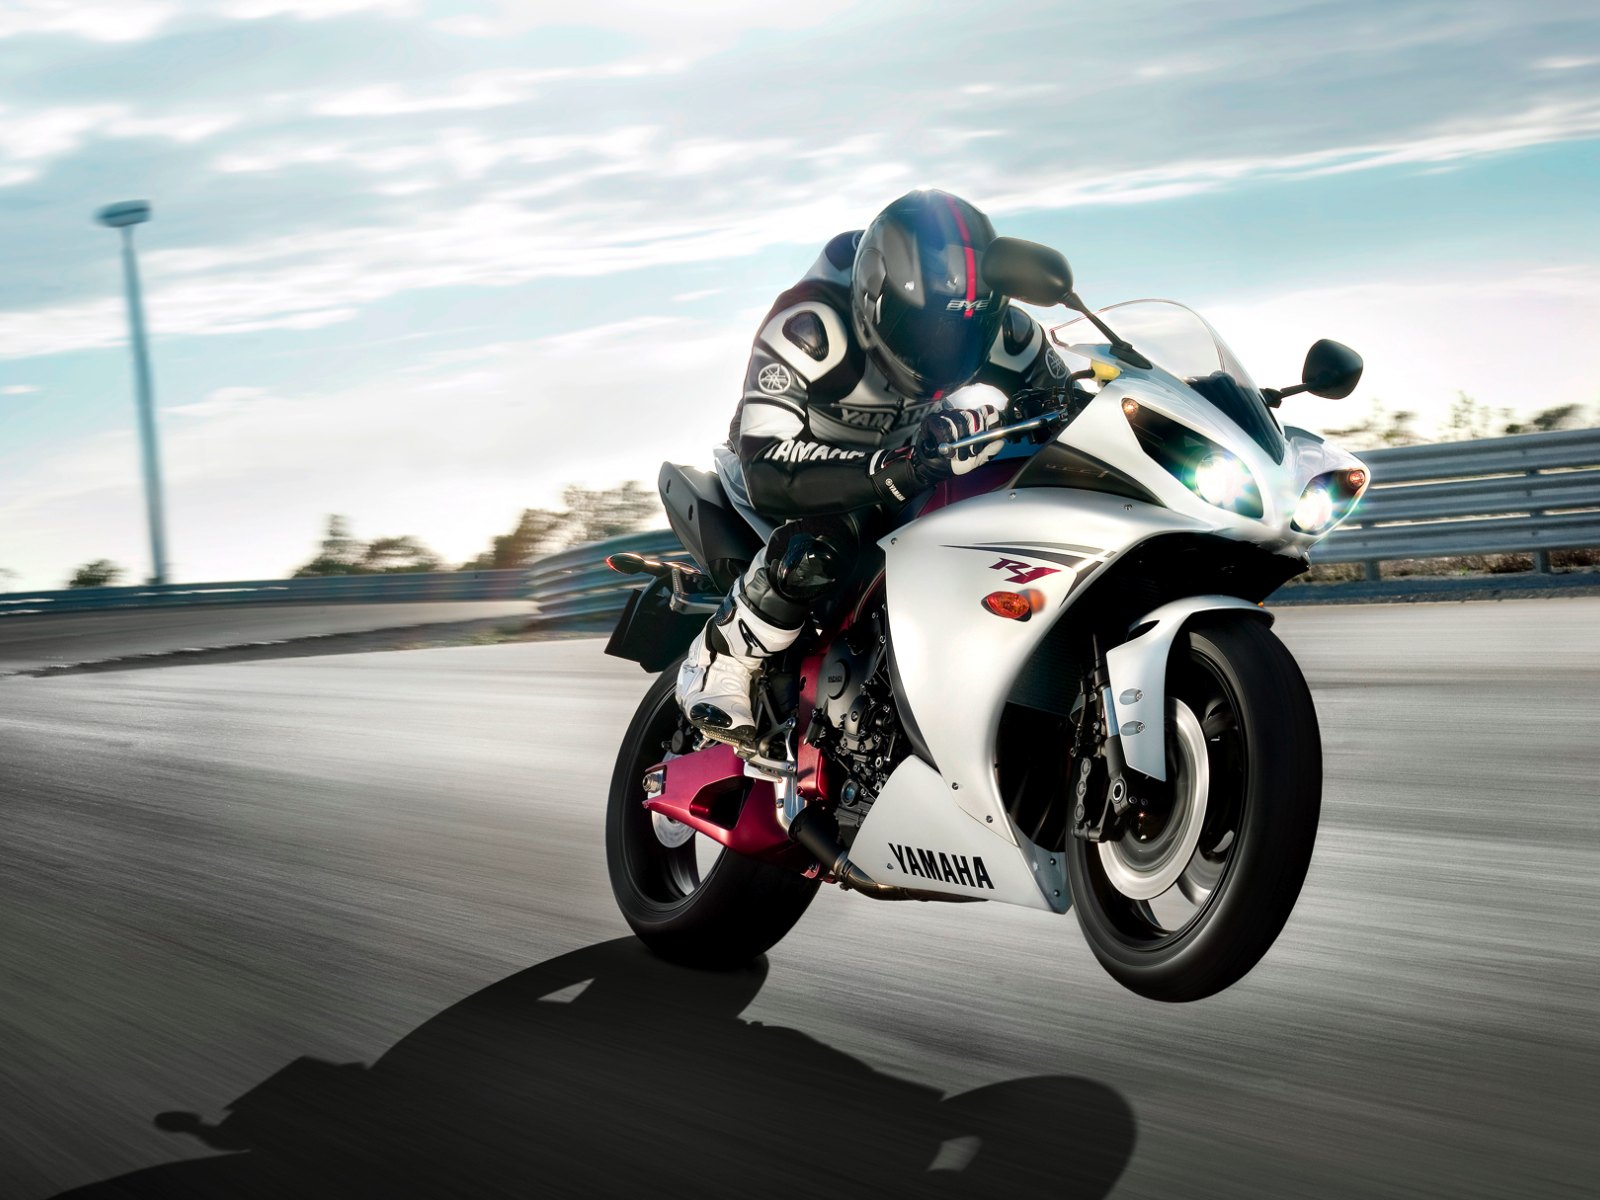 Menanti Akan Kehadiran Ke Empat Motor Gede Dari Yamaha - Yamaha R1 2012 , HD Wallpaper & Backgrounds